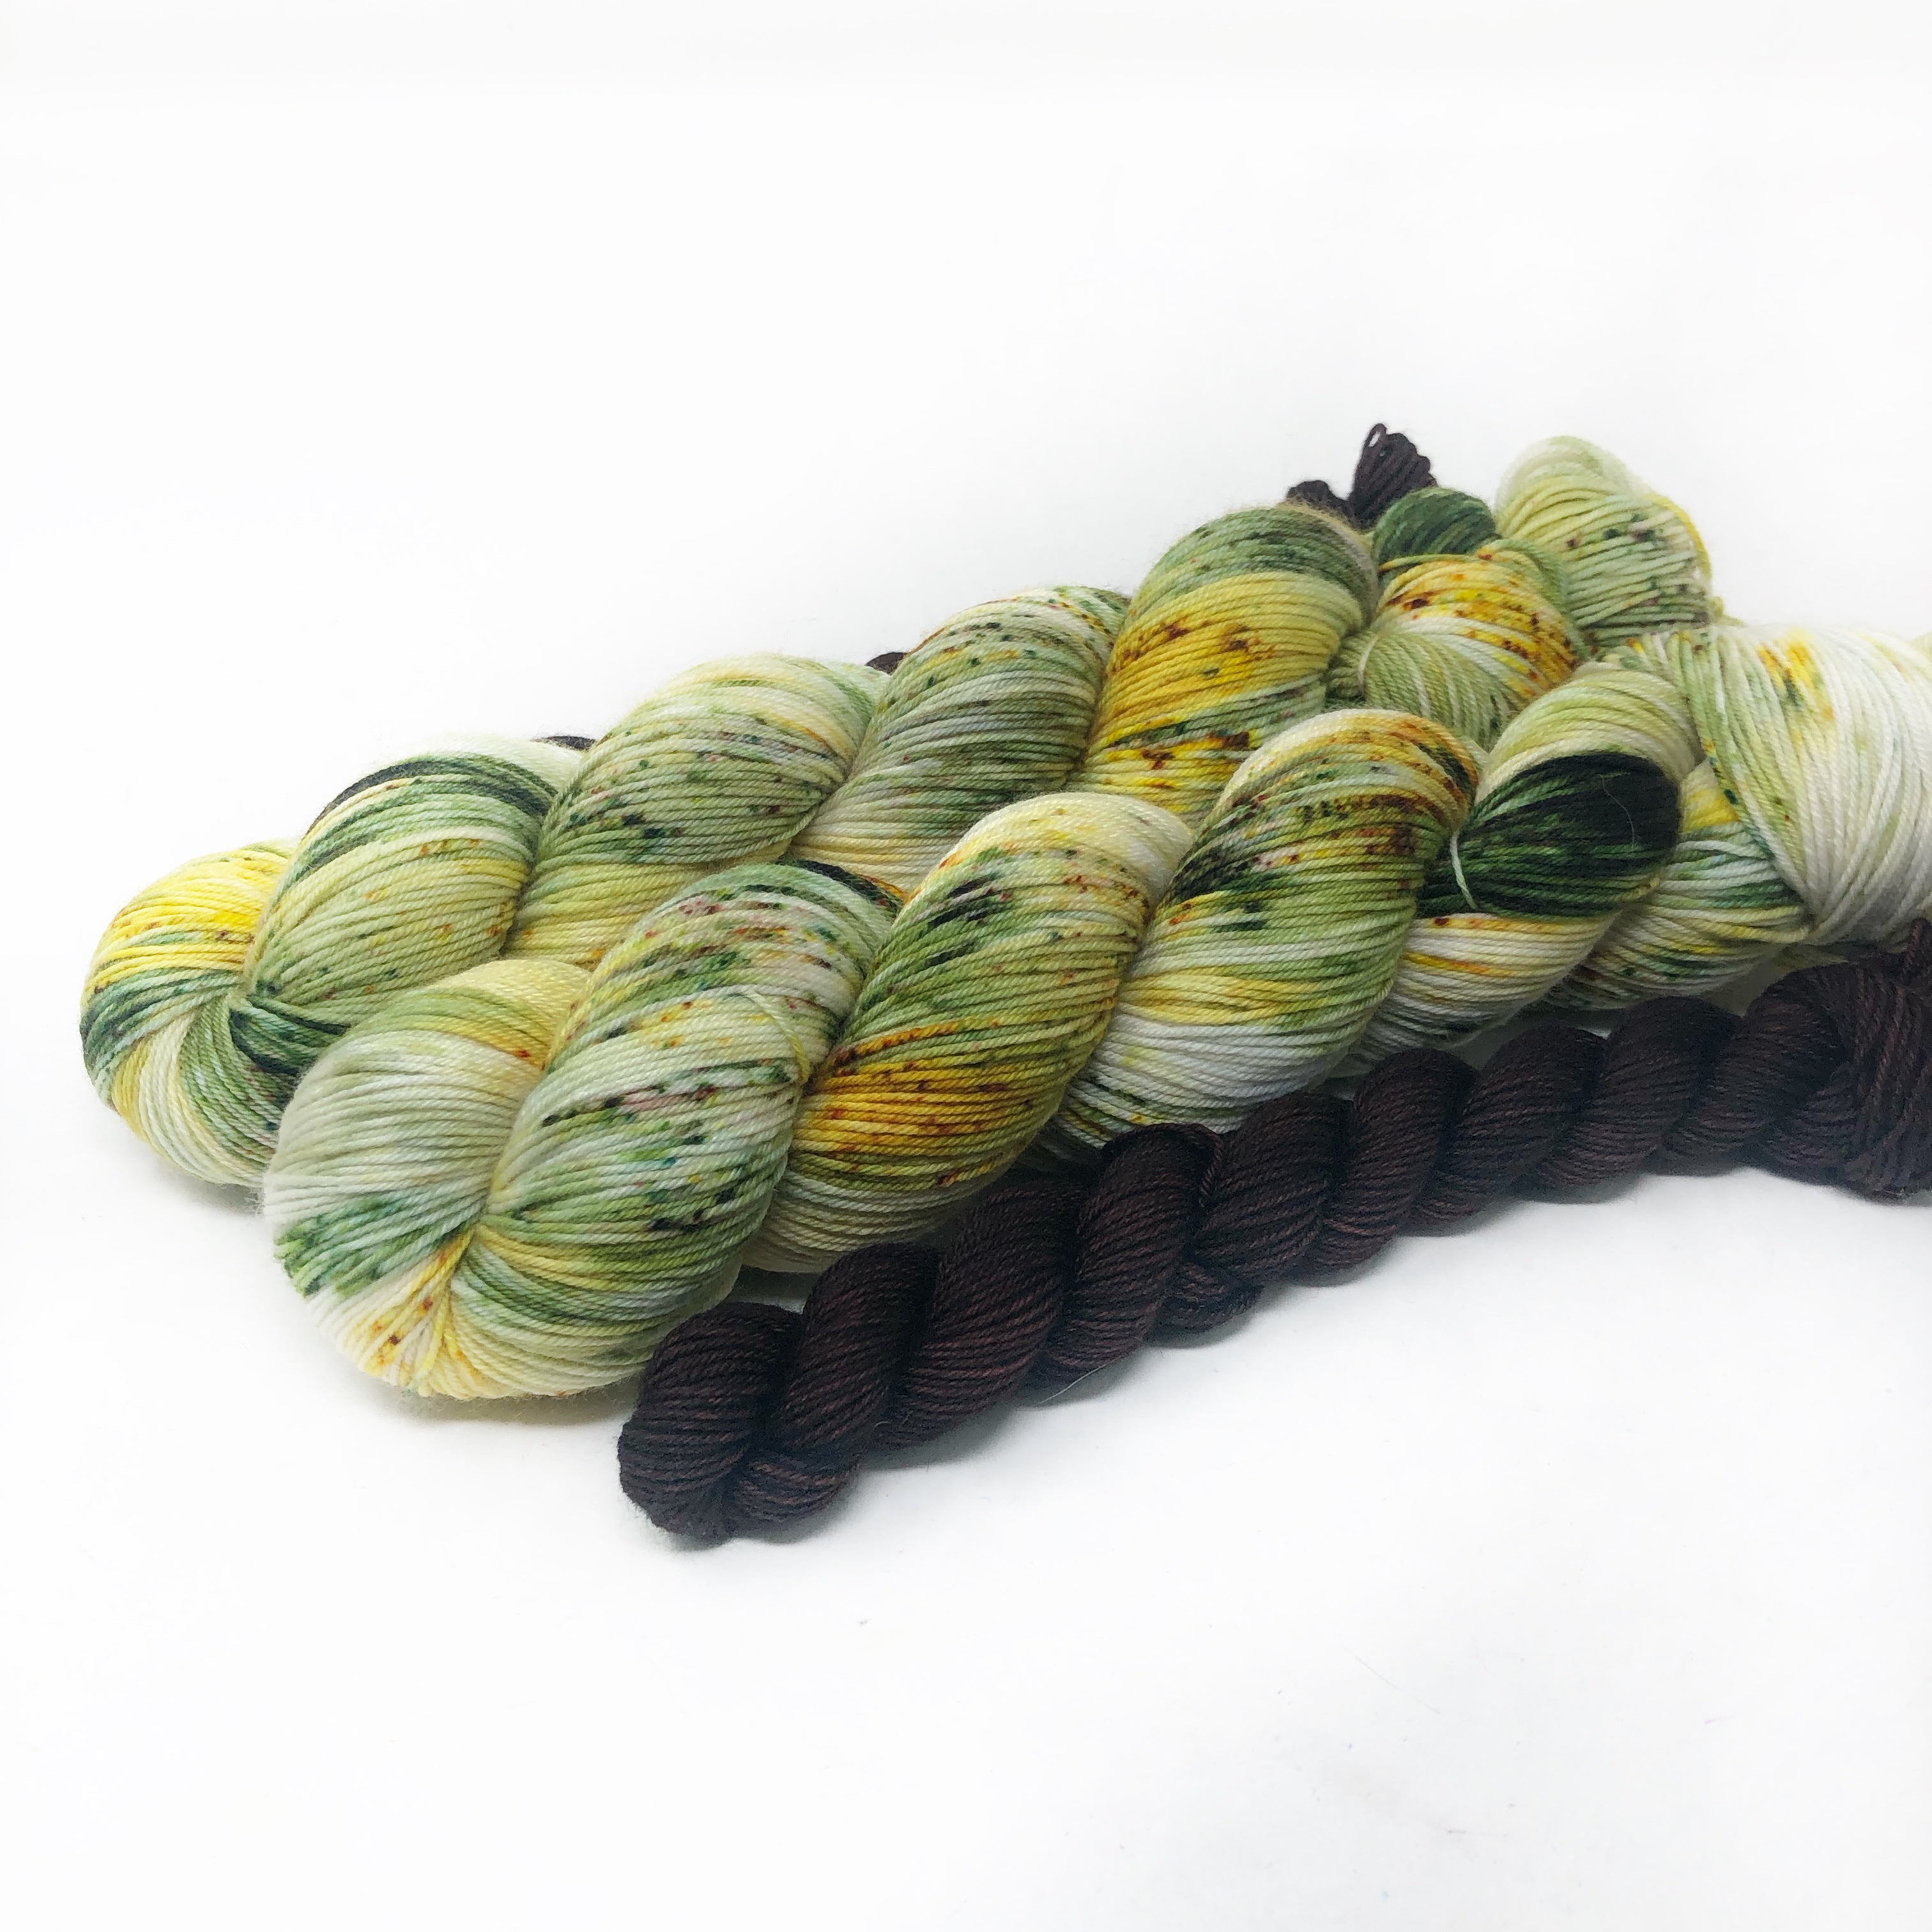 Appalachia - sock yarn with mini